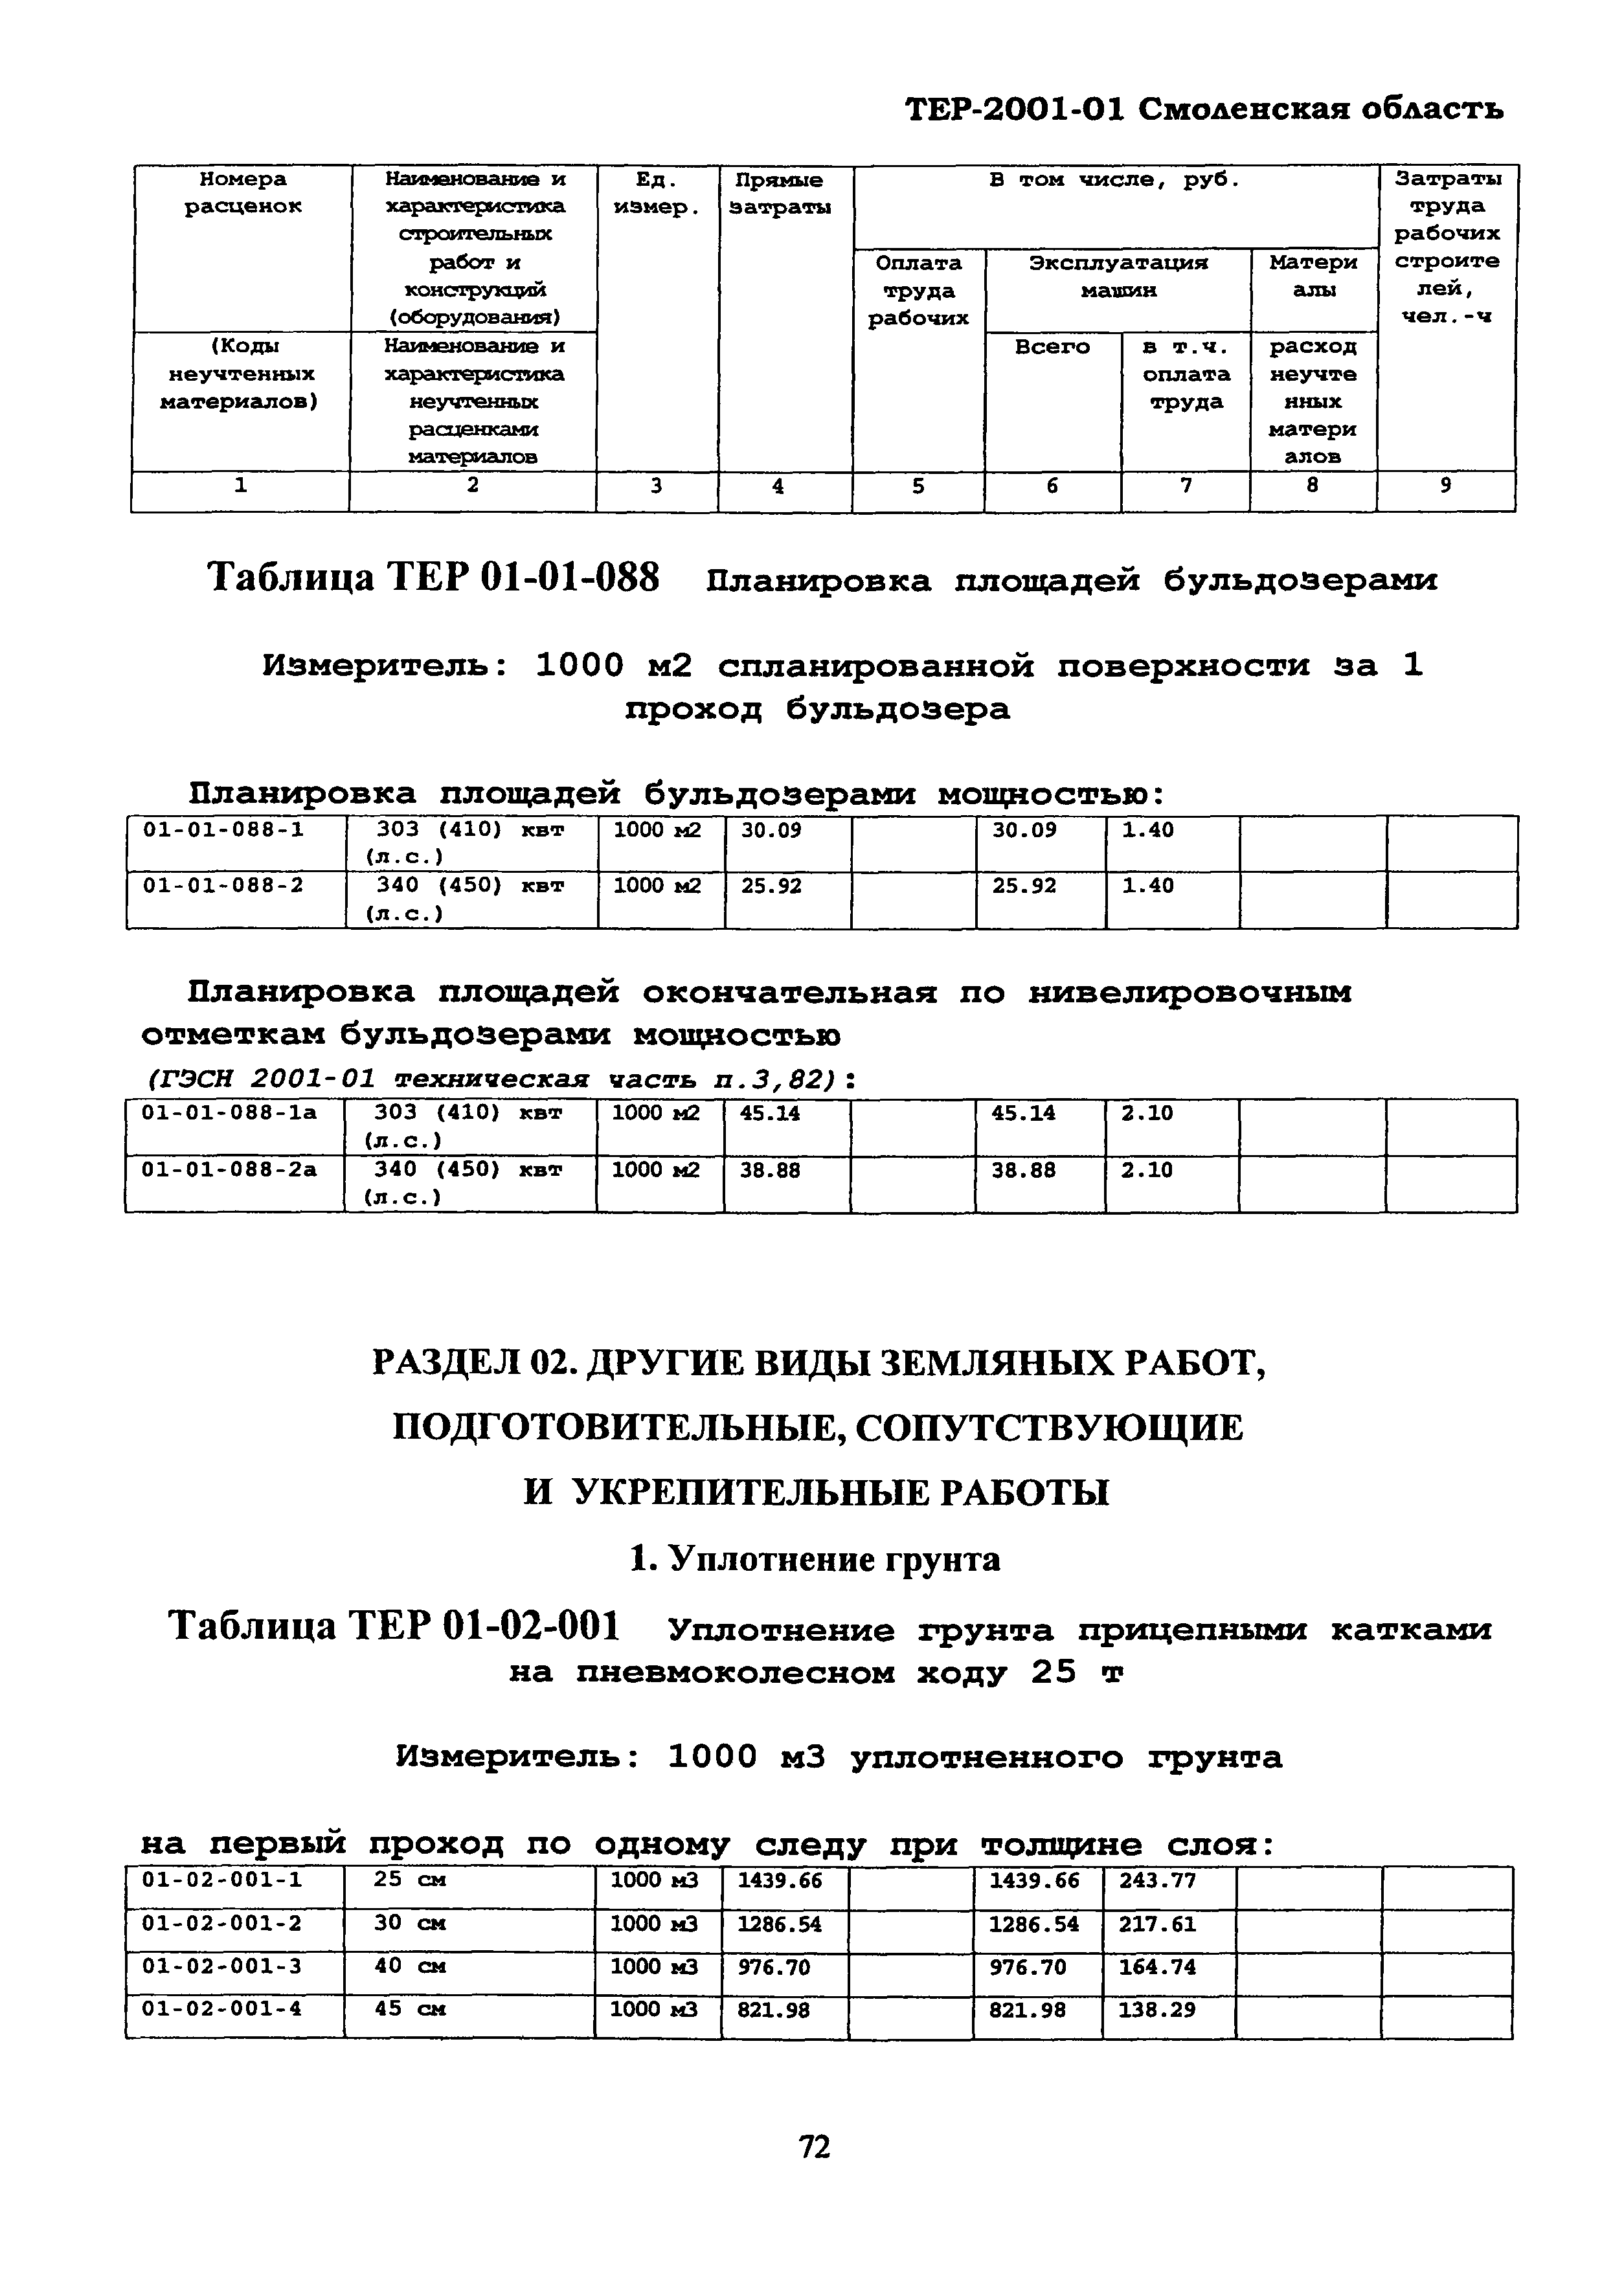 ТЕР Смоленской обл. 2001-01